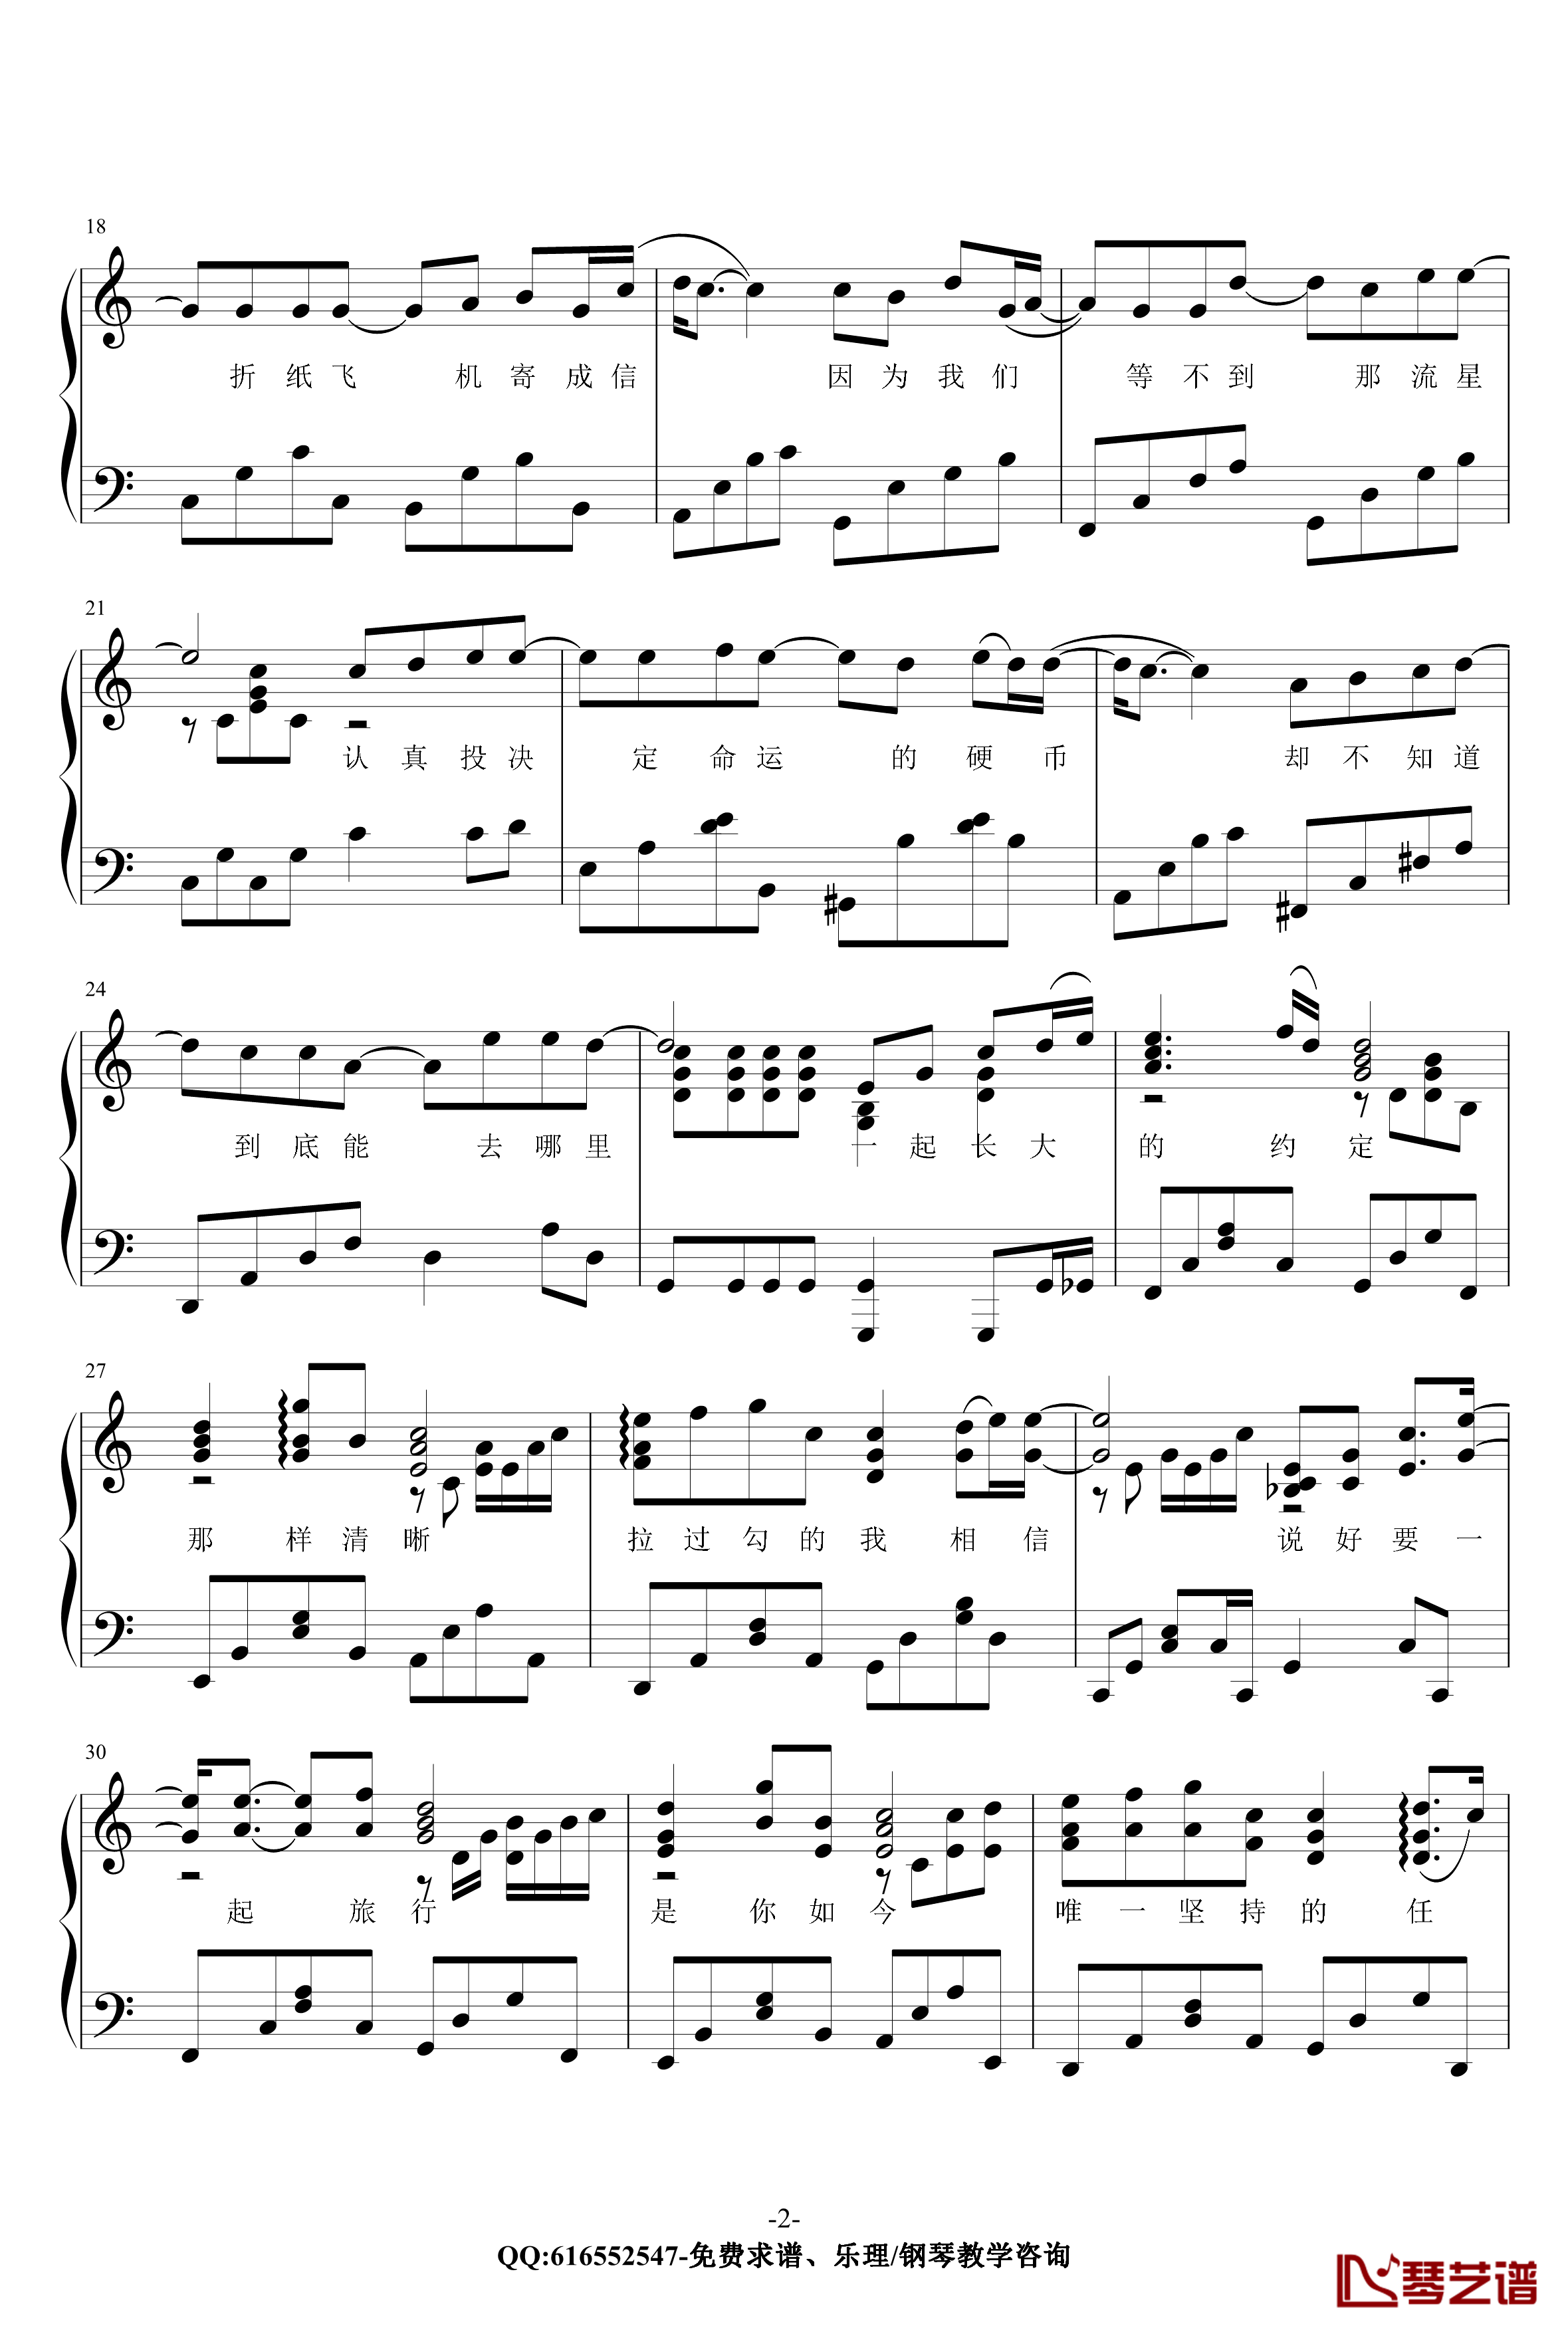 蒲公英的约定钢琴谱--金龙鱼原声独奏版节奏-周杰伦2